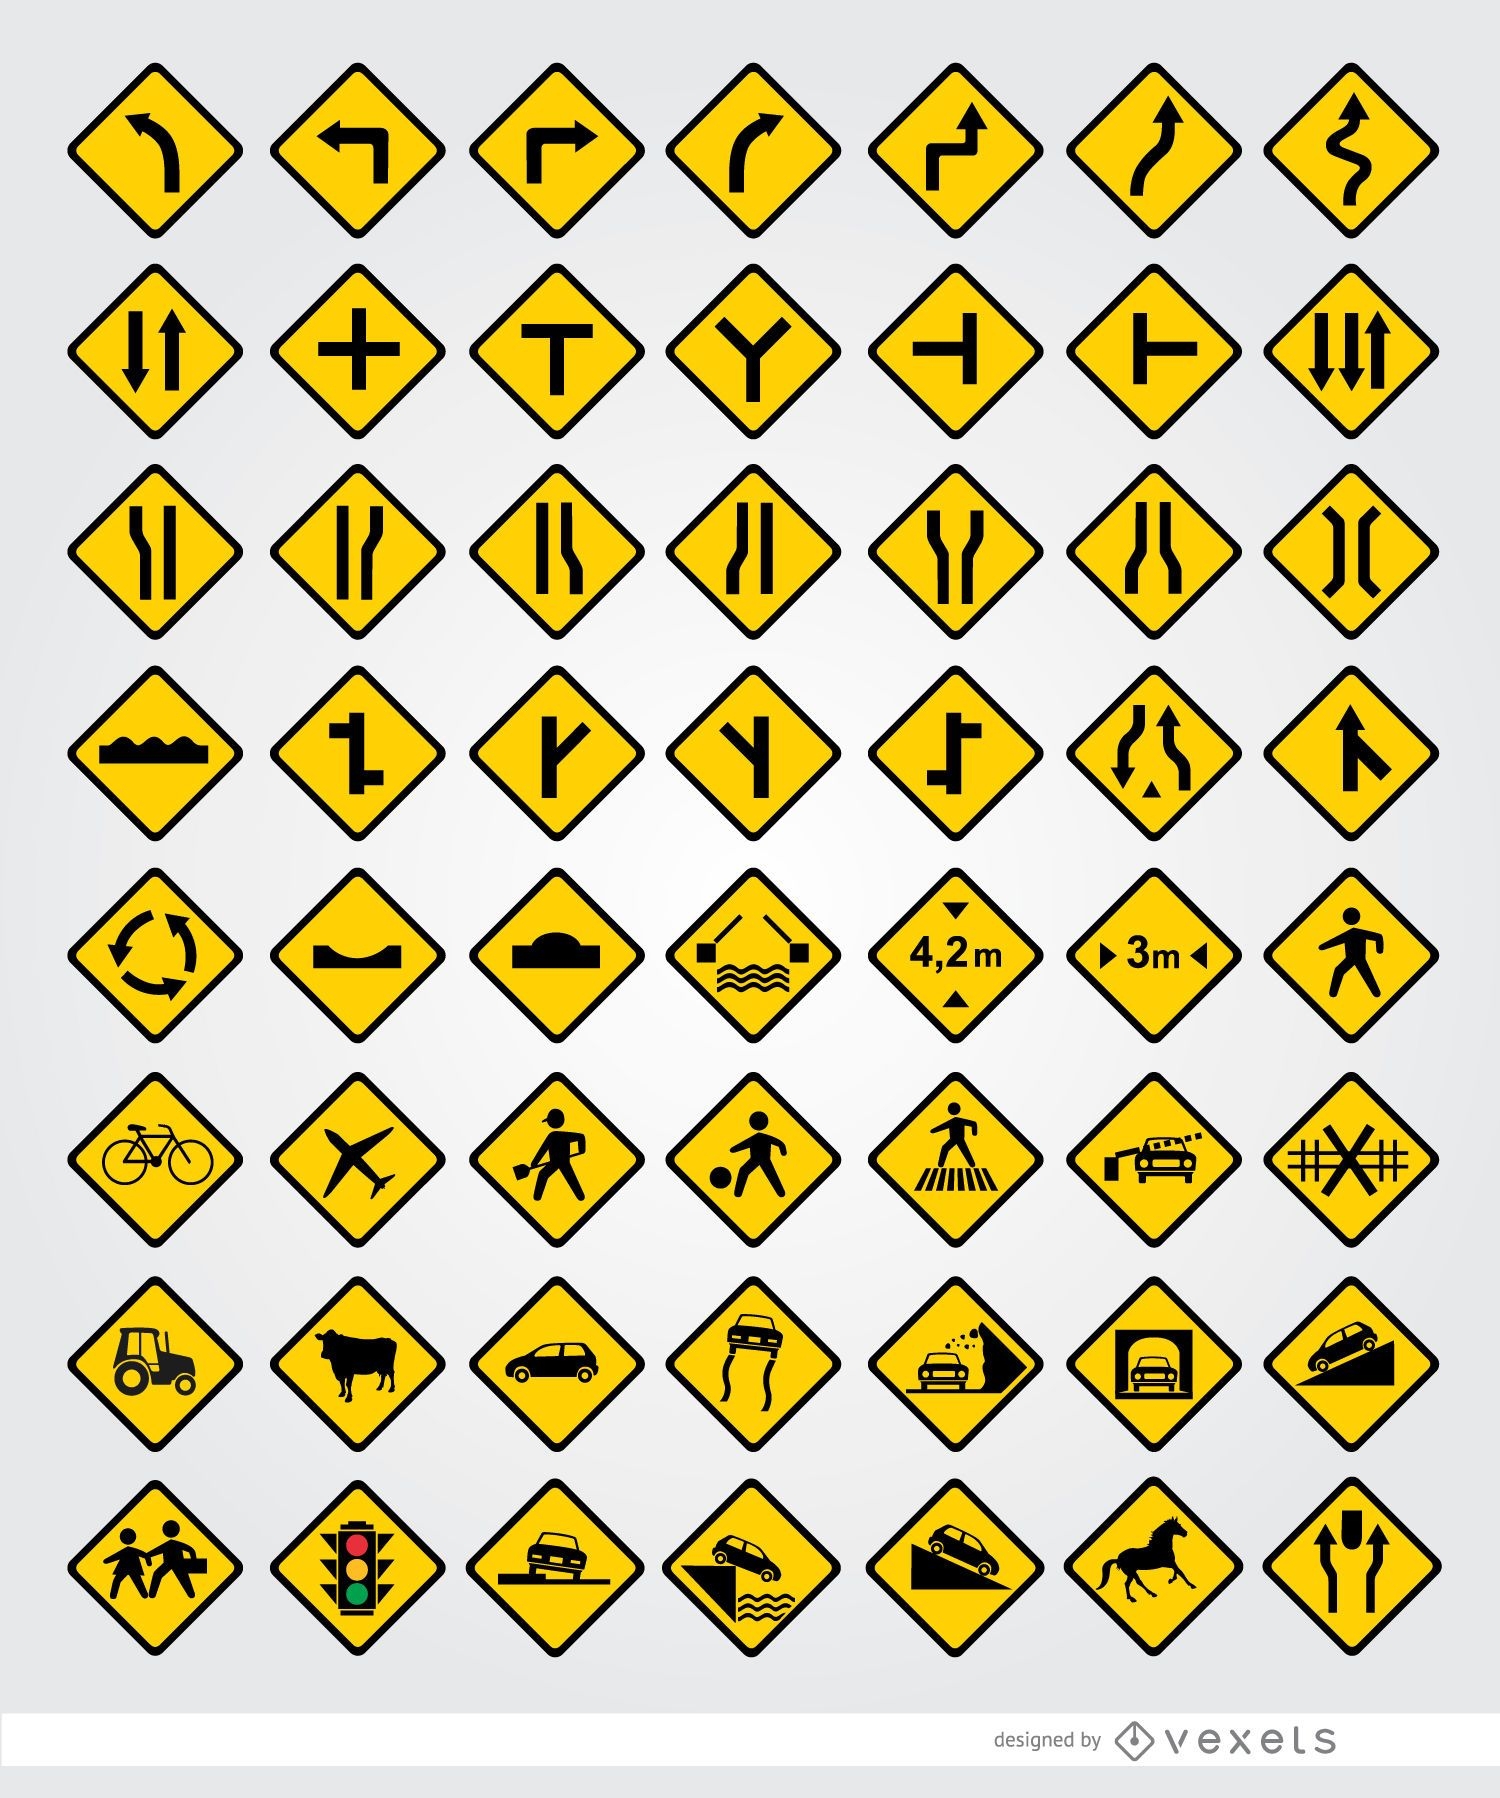 56 Straßensignale eingestellt